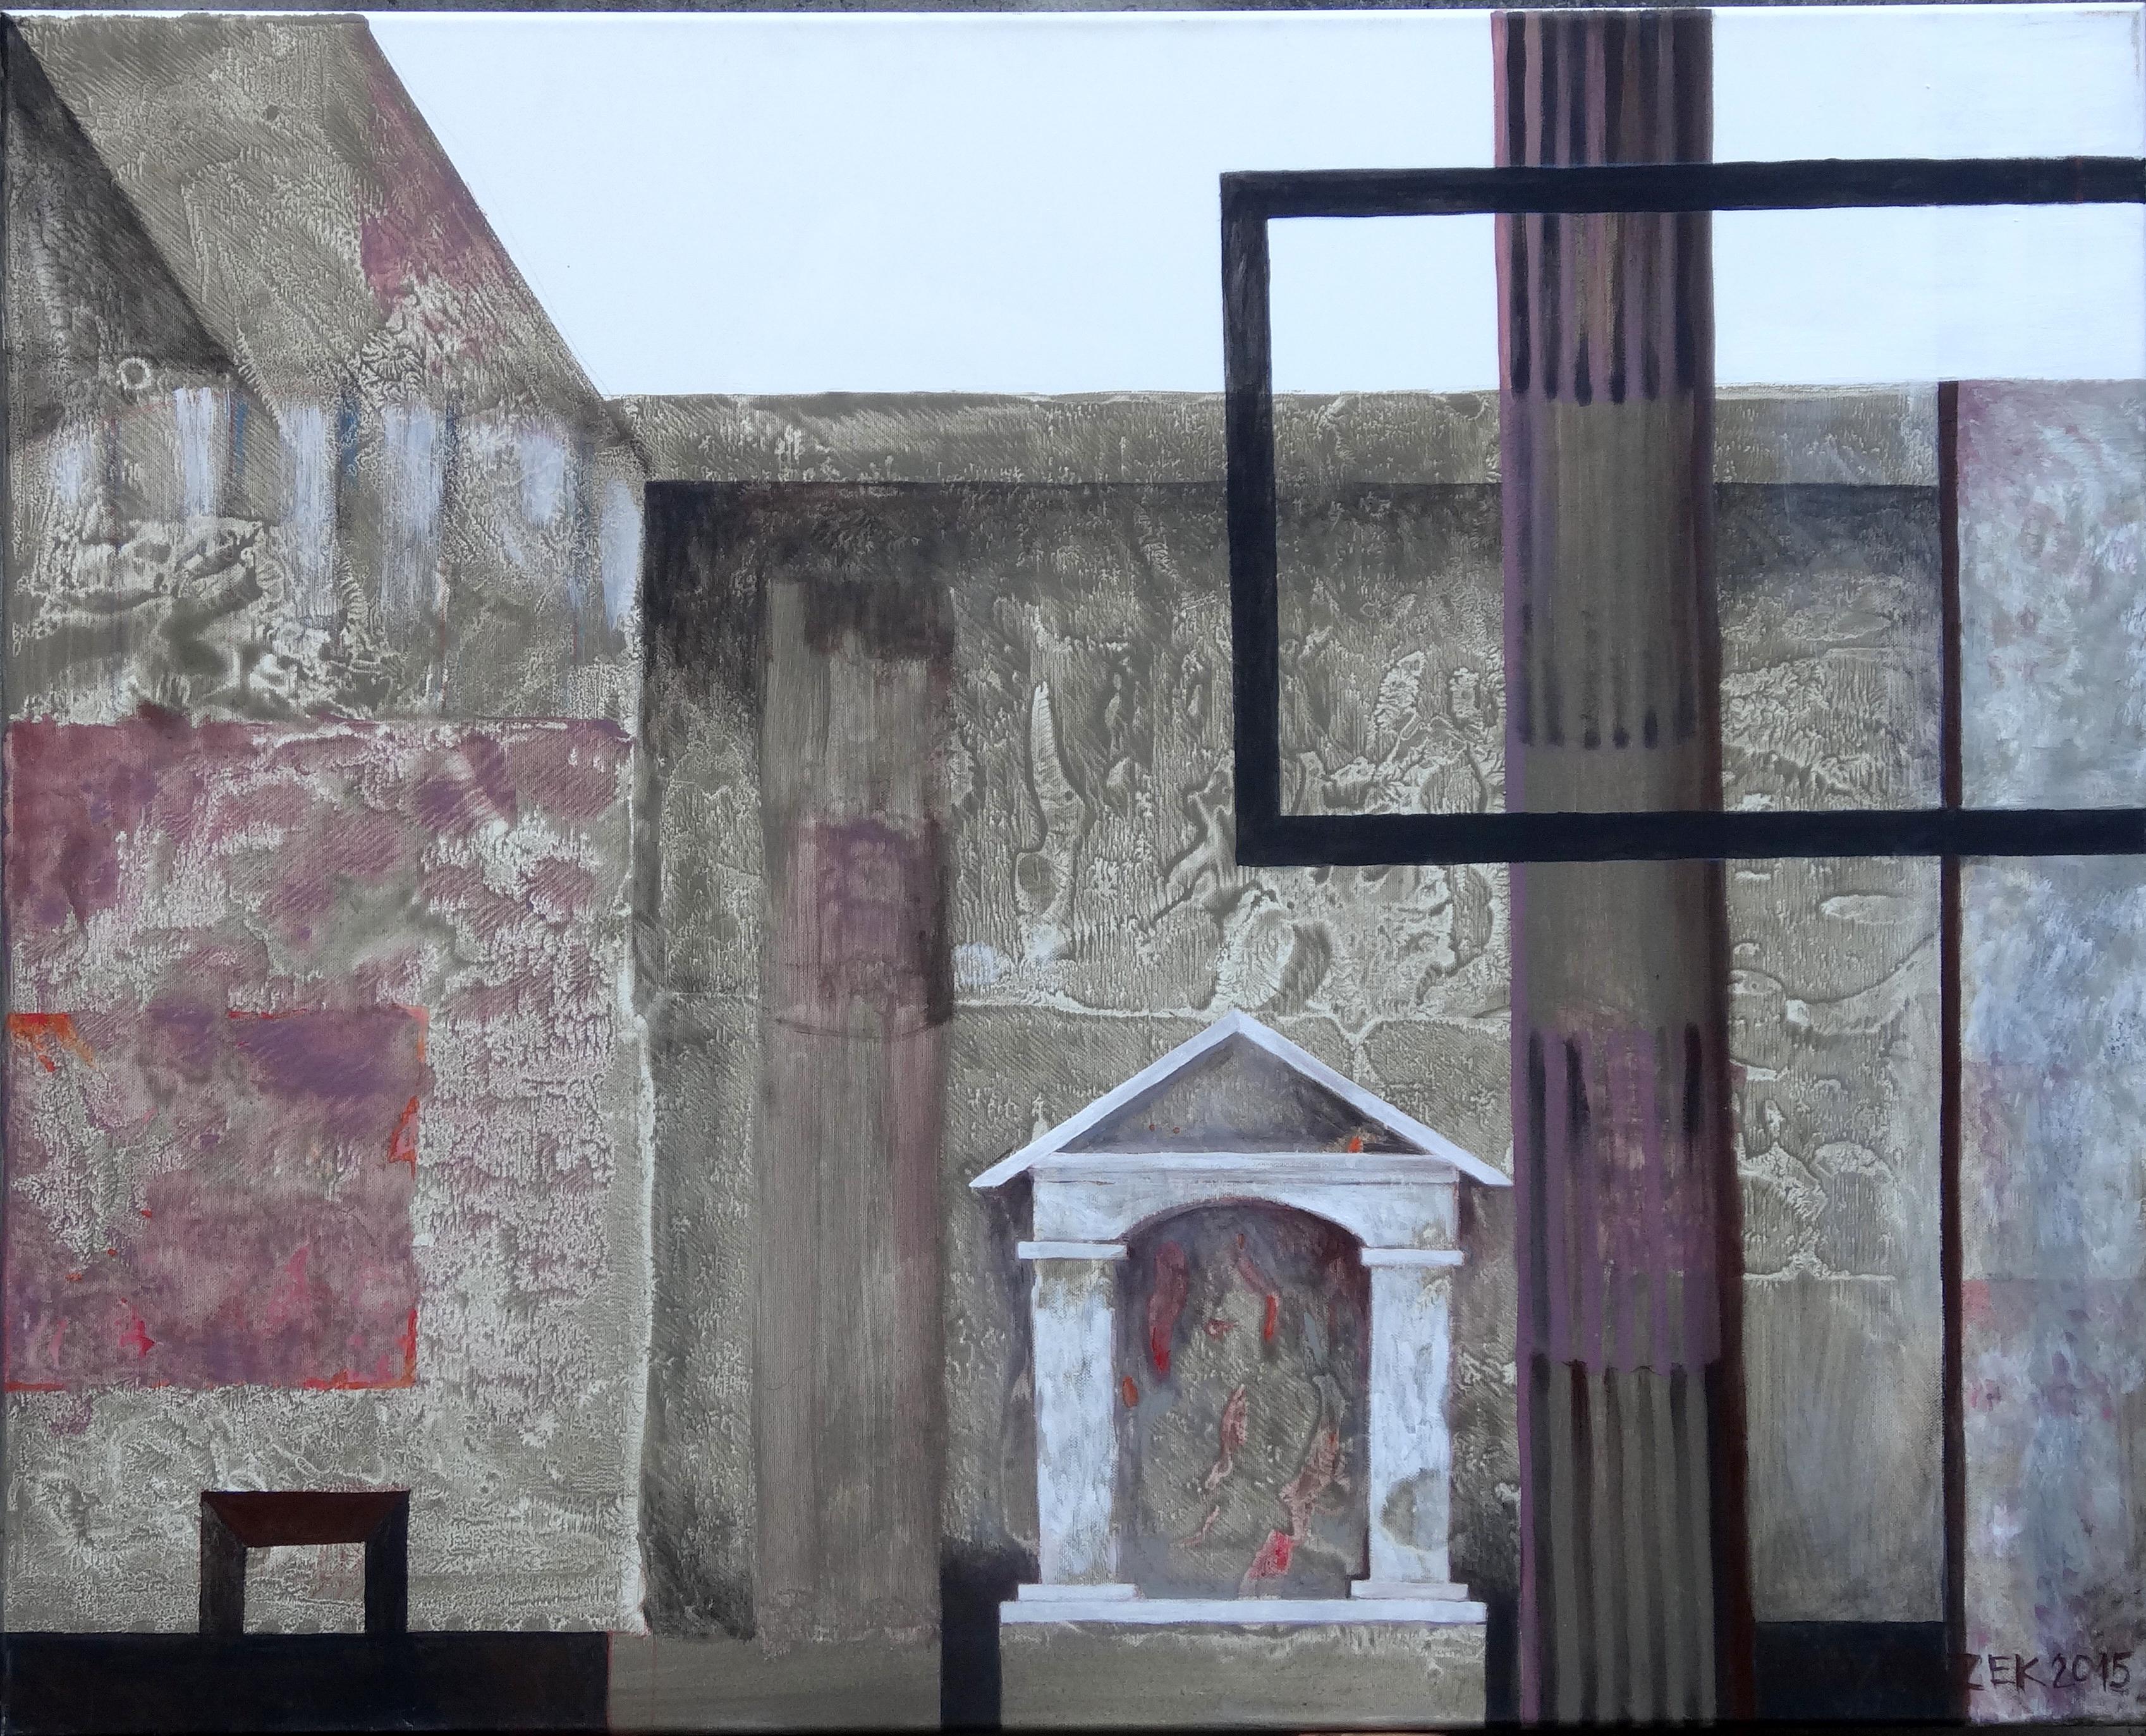 Dieses 31,5" x 39,4" große Landschaftsgemälde in Acryl auf Leinwand von Ewa Miazekk-Mioduszewska zeigt die verfallende Struktur einer kleinen Kapelle mit einer schwarzen rechteckigen Gerüststruktur in Pompeji, Italien. Die Landschaft ist in einer